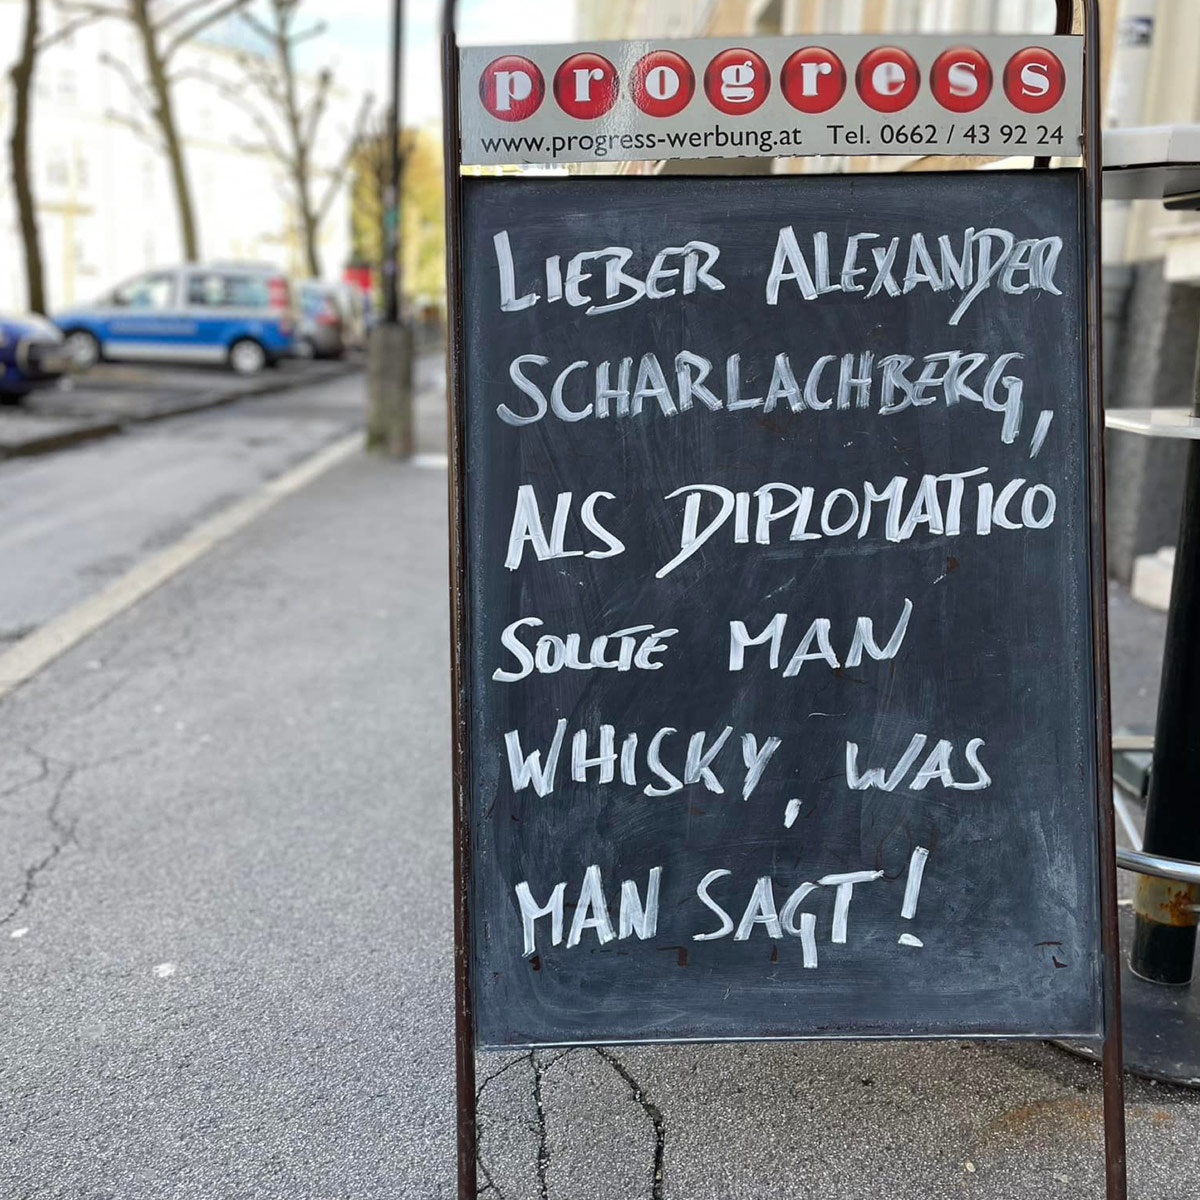 Lieber Alexander Scharlachberg, Als Diplomatico Sollte Man Whisky, Was Man Sagt!